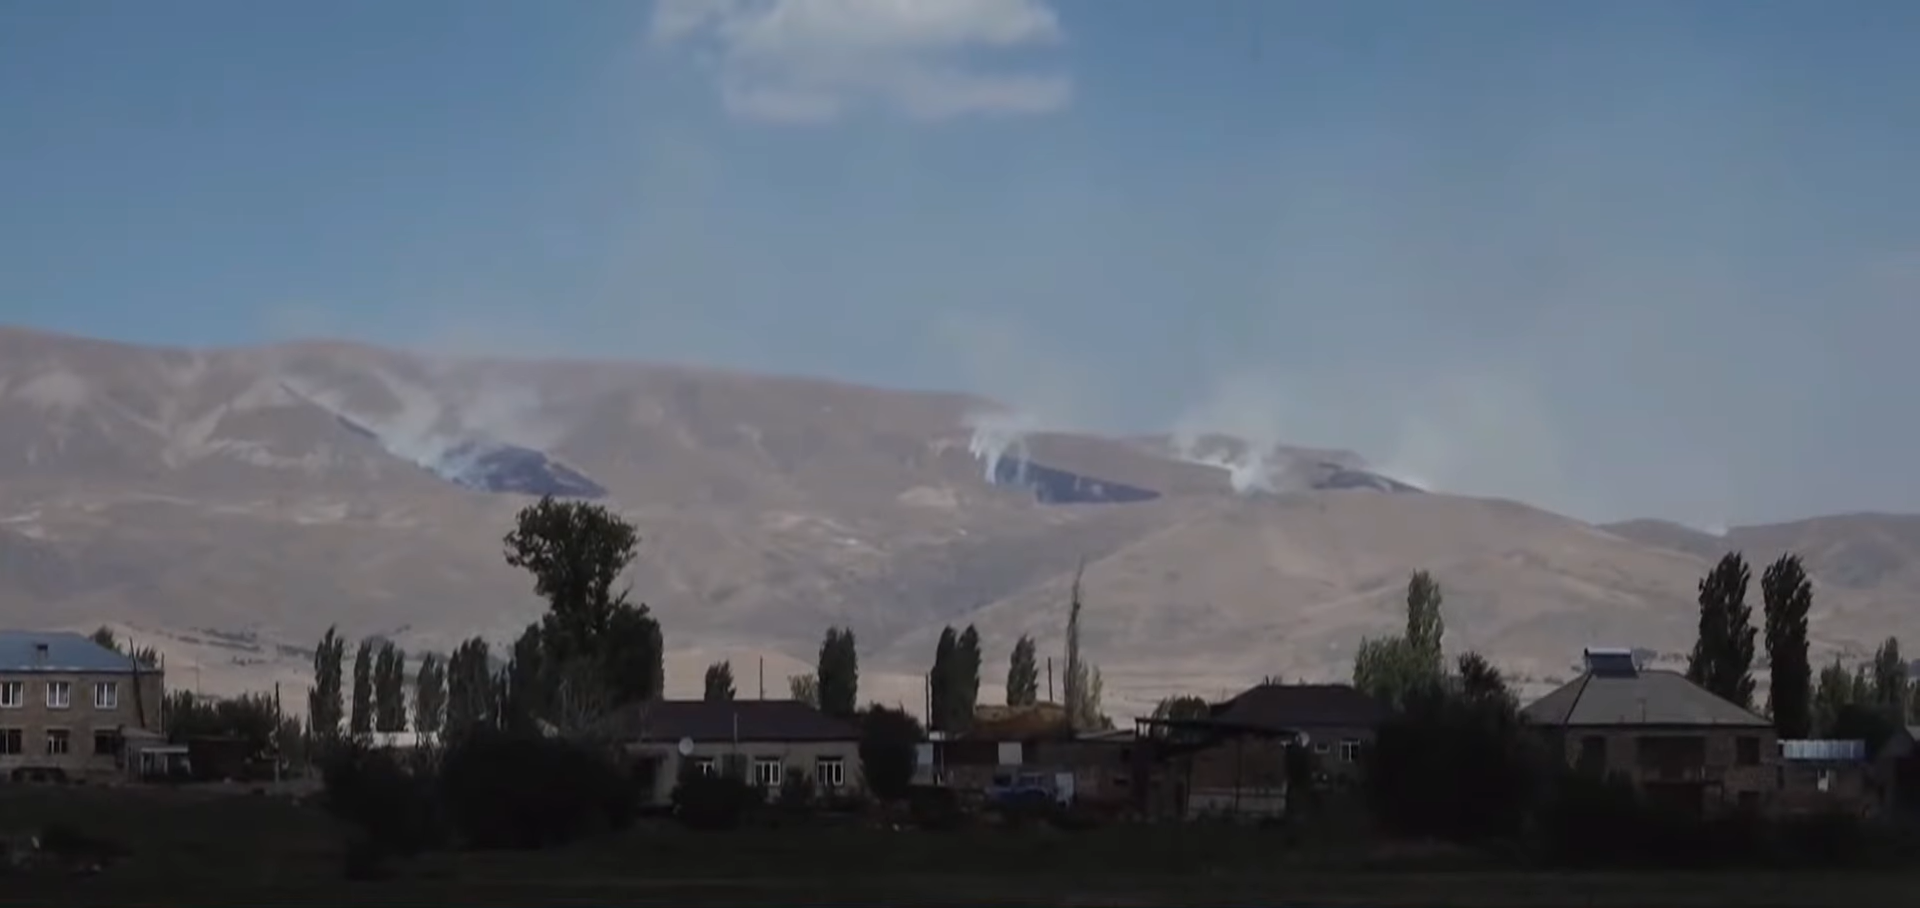 Ջերմուկի հատվածում ադրբեջանական առաջխաղացումը՝ ըստ արբանյակային լուսանկարների